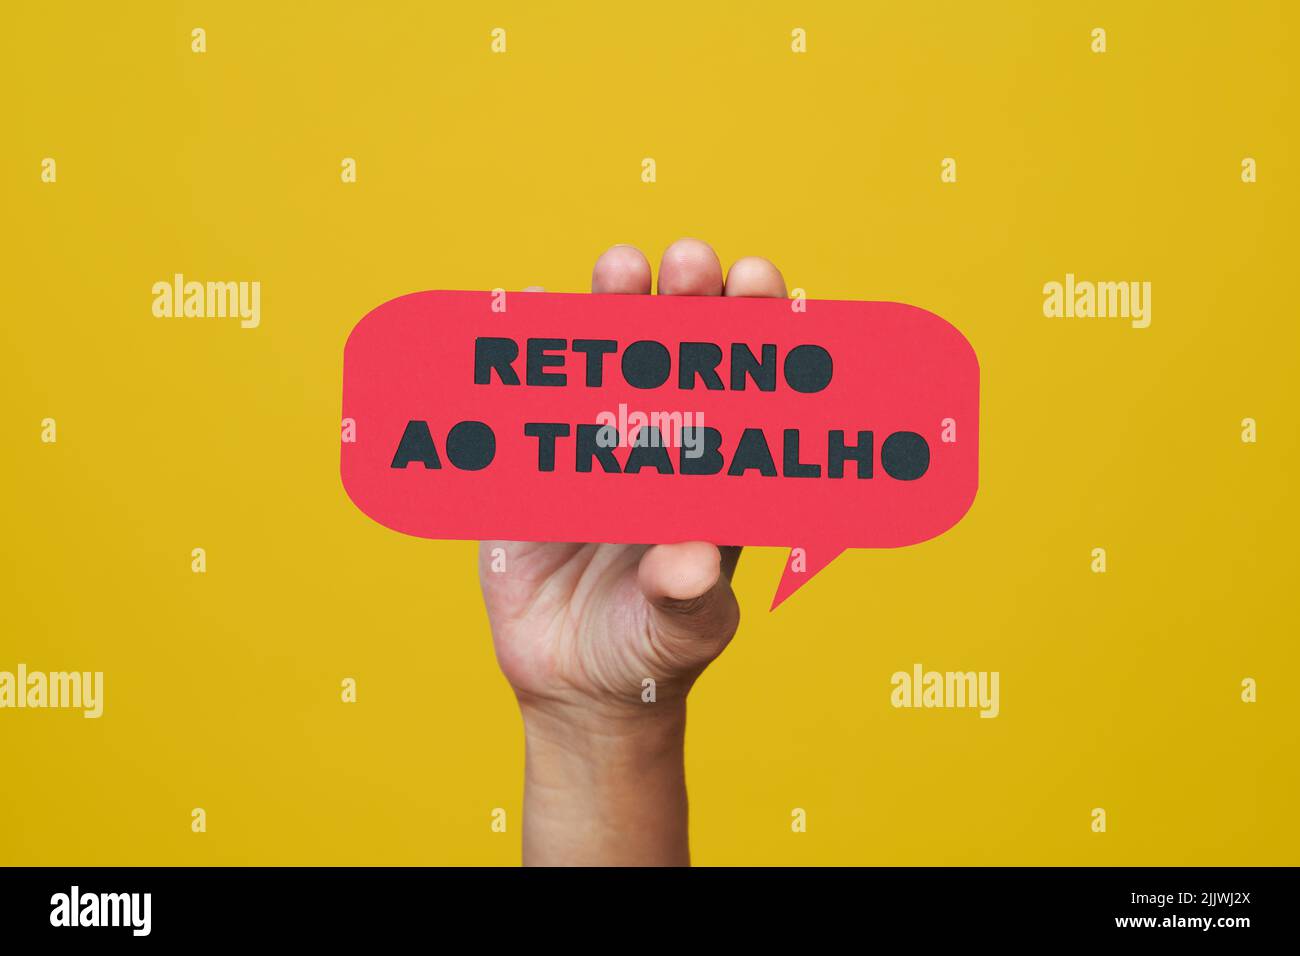 un hombre sostiene una señal de papel rojo, en forma de burbuja de discurso, que lee el texto para trabajar escrito en portugués, sobre un fondo amarillo Foto de stock